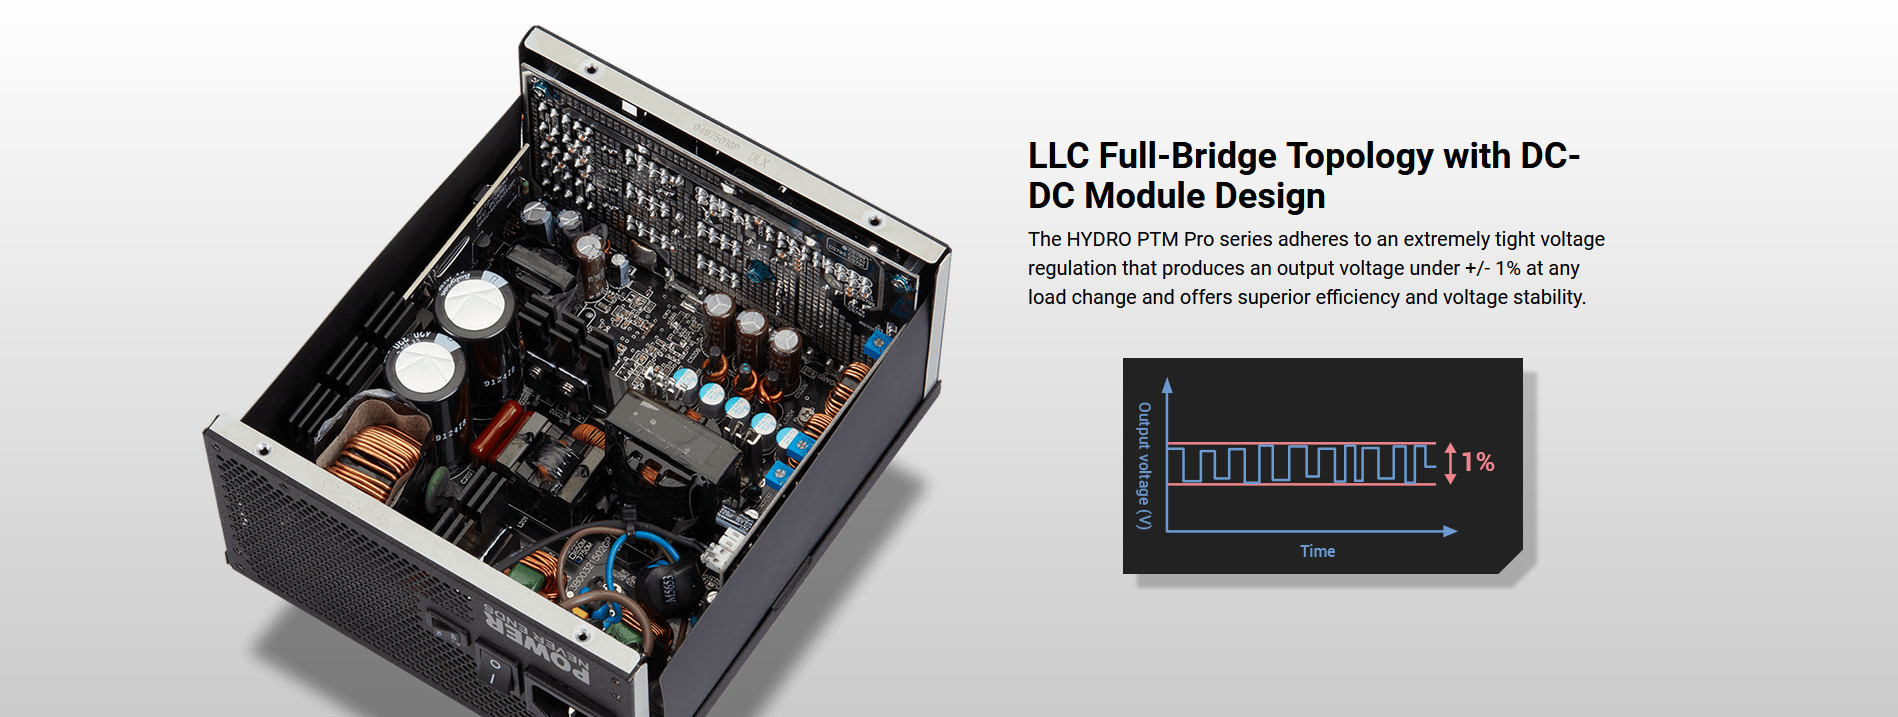 Nguồn FSP Power Supply HYDRO PTM PRO HPT2-650M  Active PFC (80 Plus Platinum/Full Modular /Màu Đen) giới thiệu 4